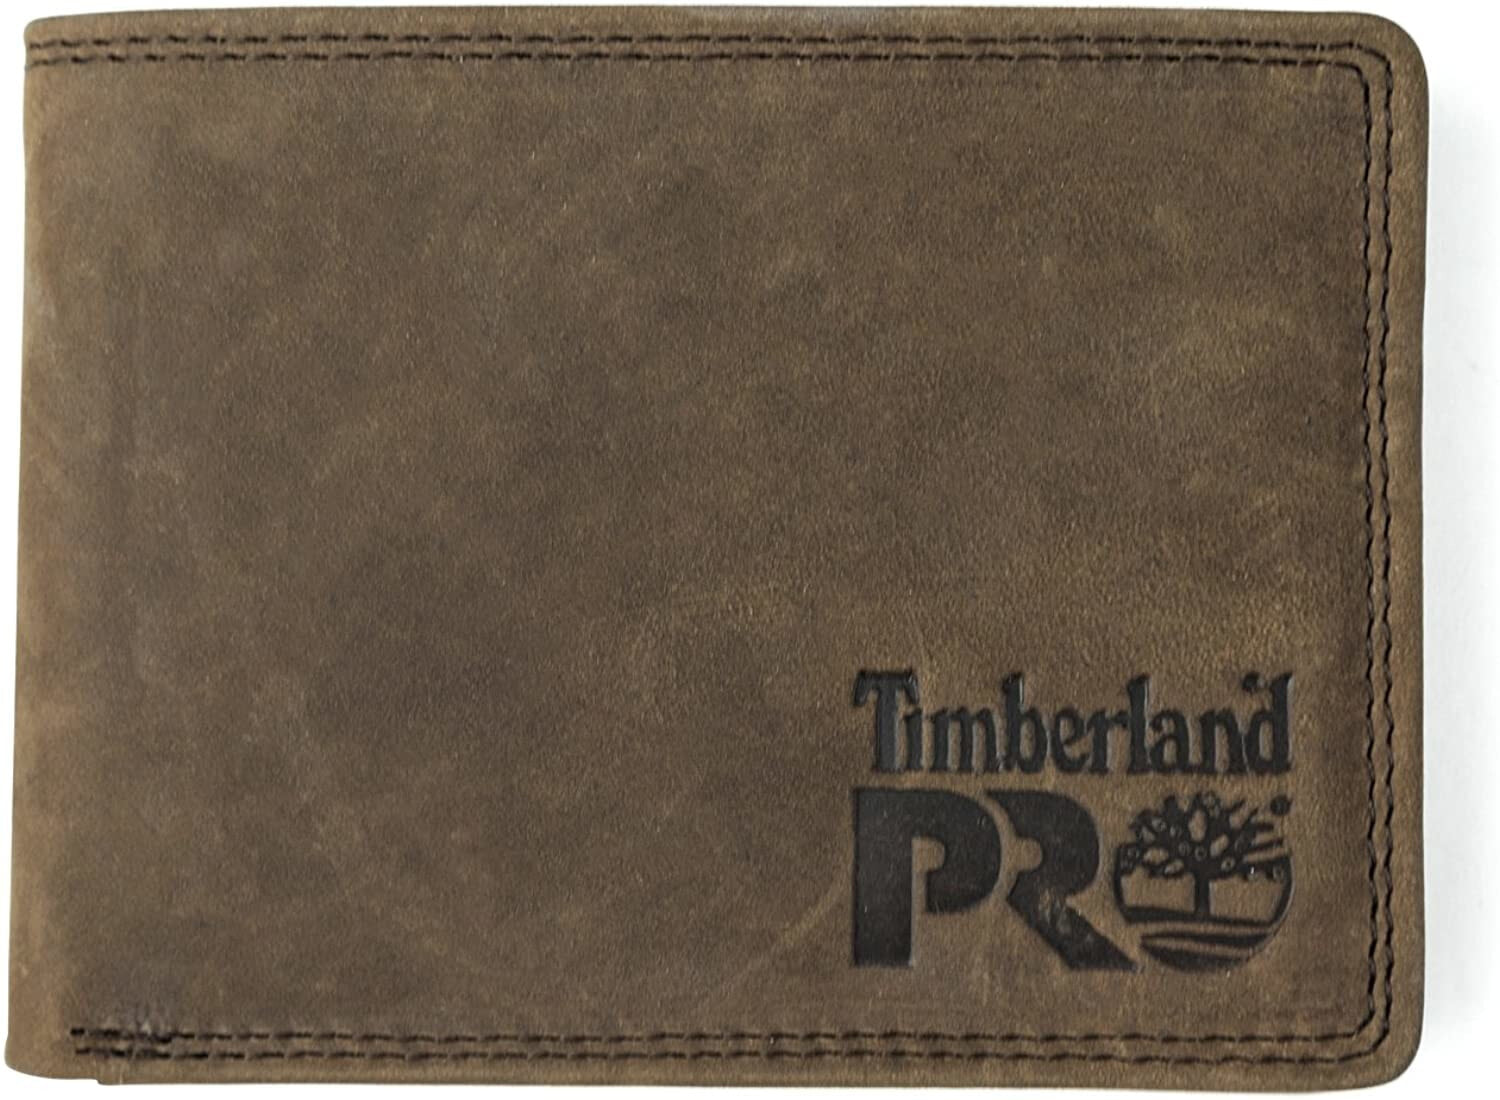 Мужское портмоне кожаное горизонтальное коричневое без застежки Timberland PRO Men's Leather RFID Wallet with Removable Flip Pocket Card Carrier